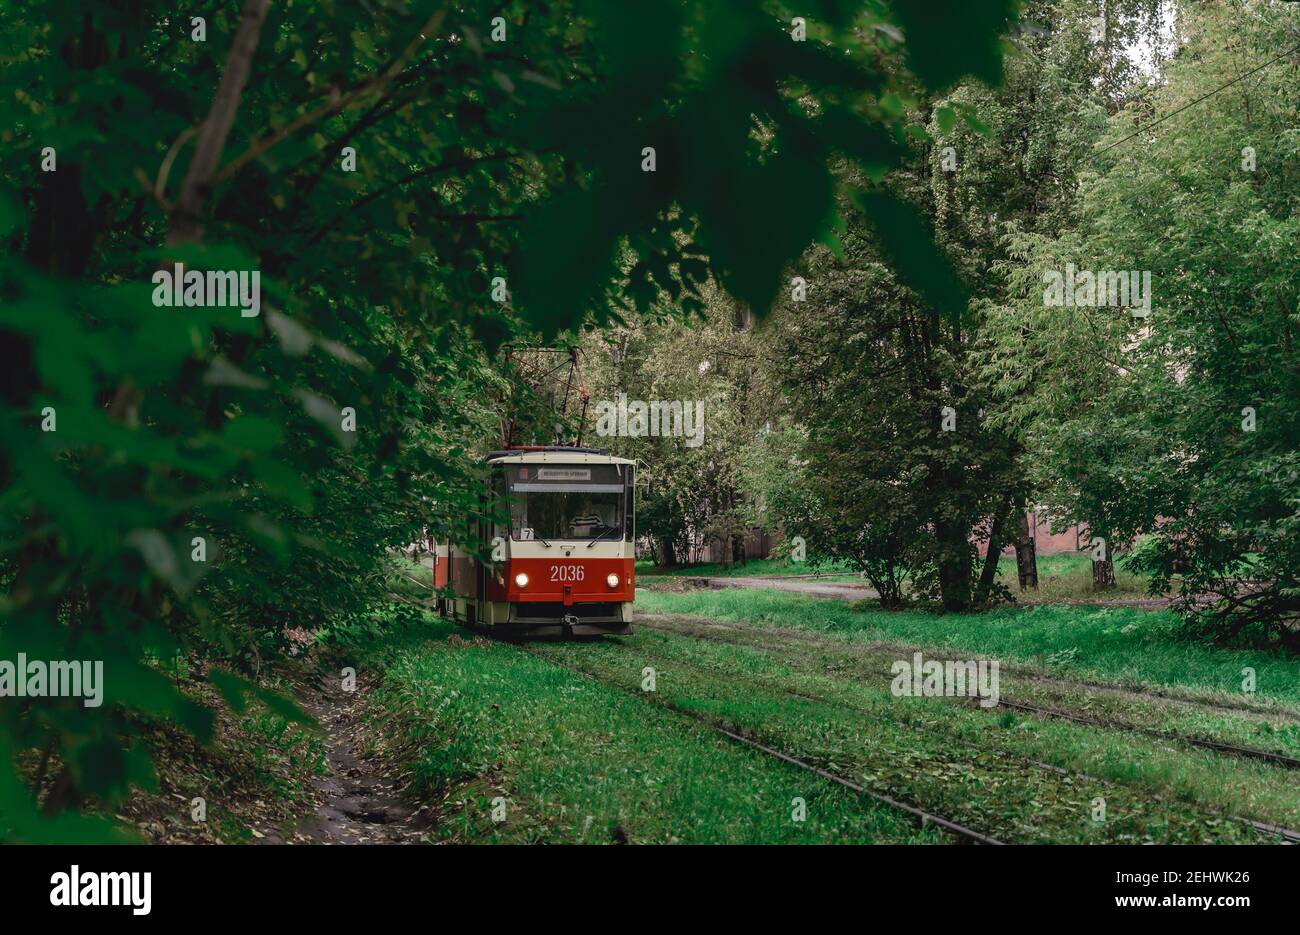 Die Straßenbahn fährt durch dichte Baumstämme. Sommerlandschaft im Park mit der Straßenbahn. Izhevsk, Russland. Stockfoto